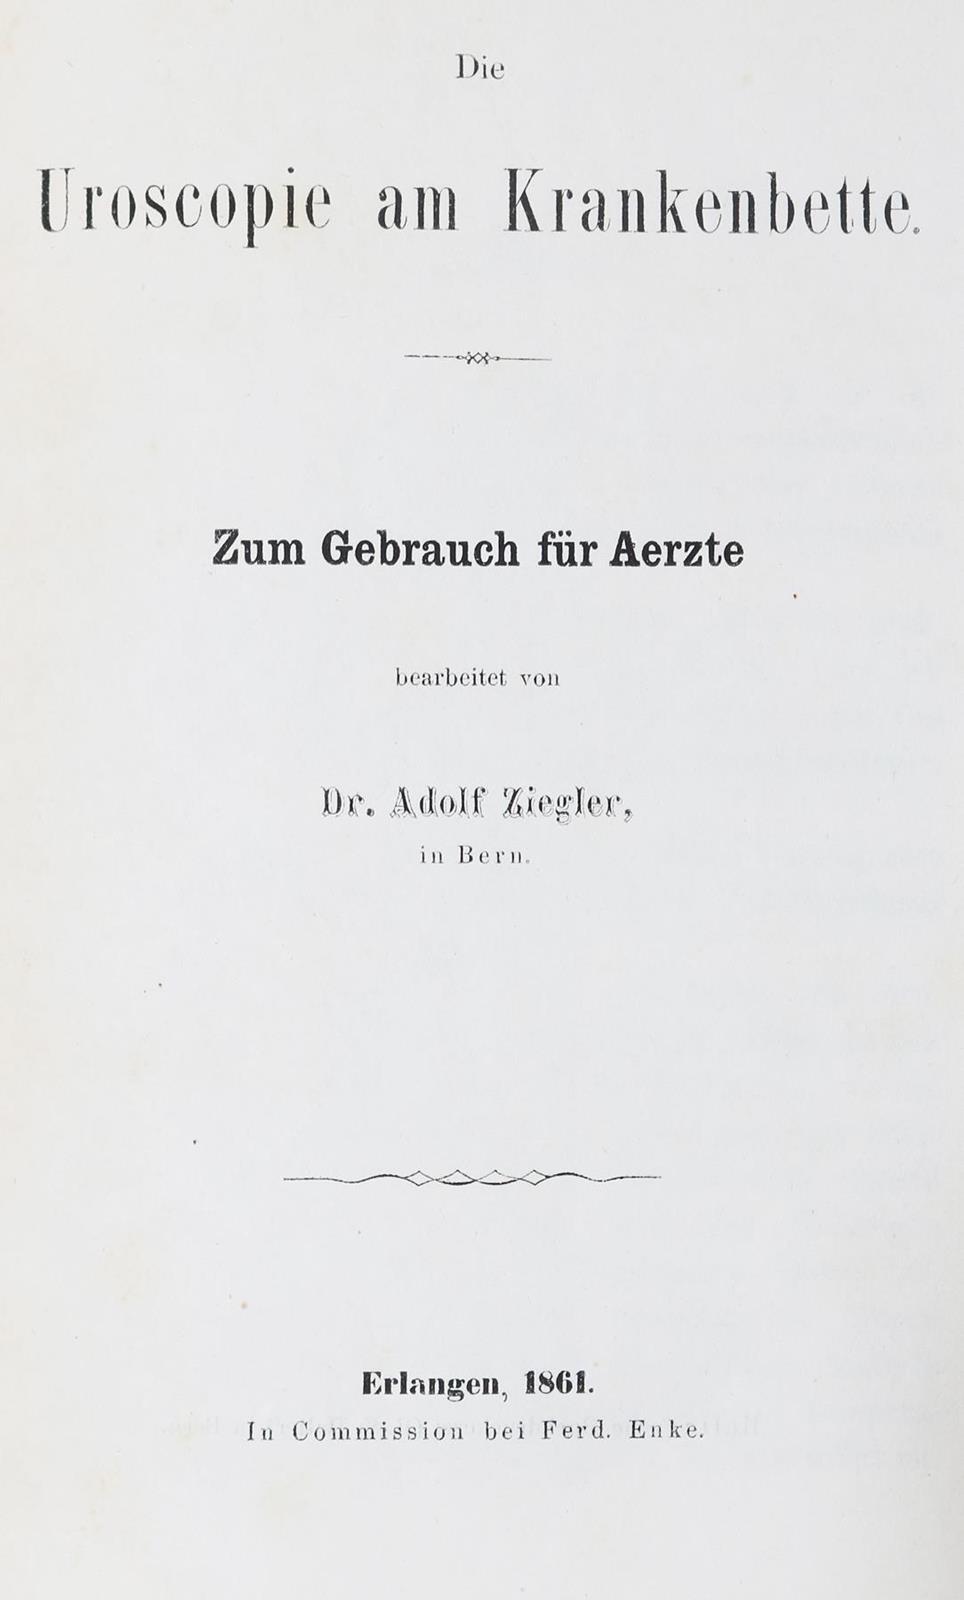 Wöhler,F. | Bild Nr.2